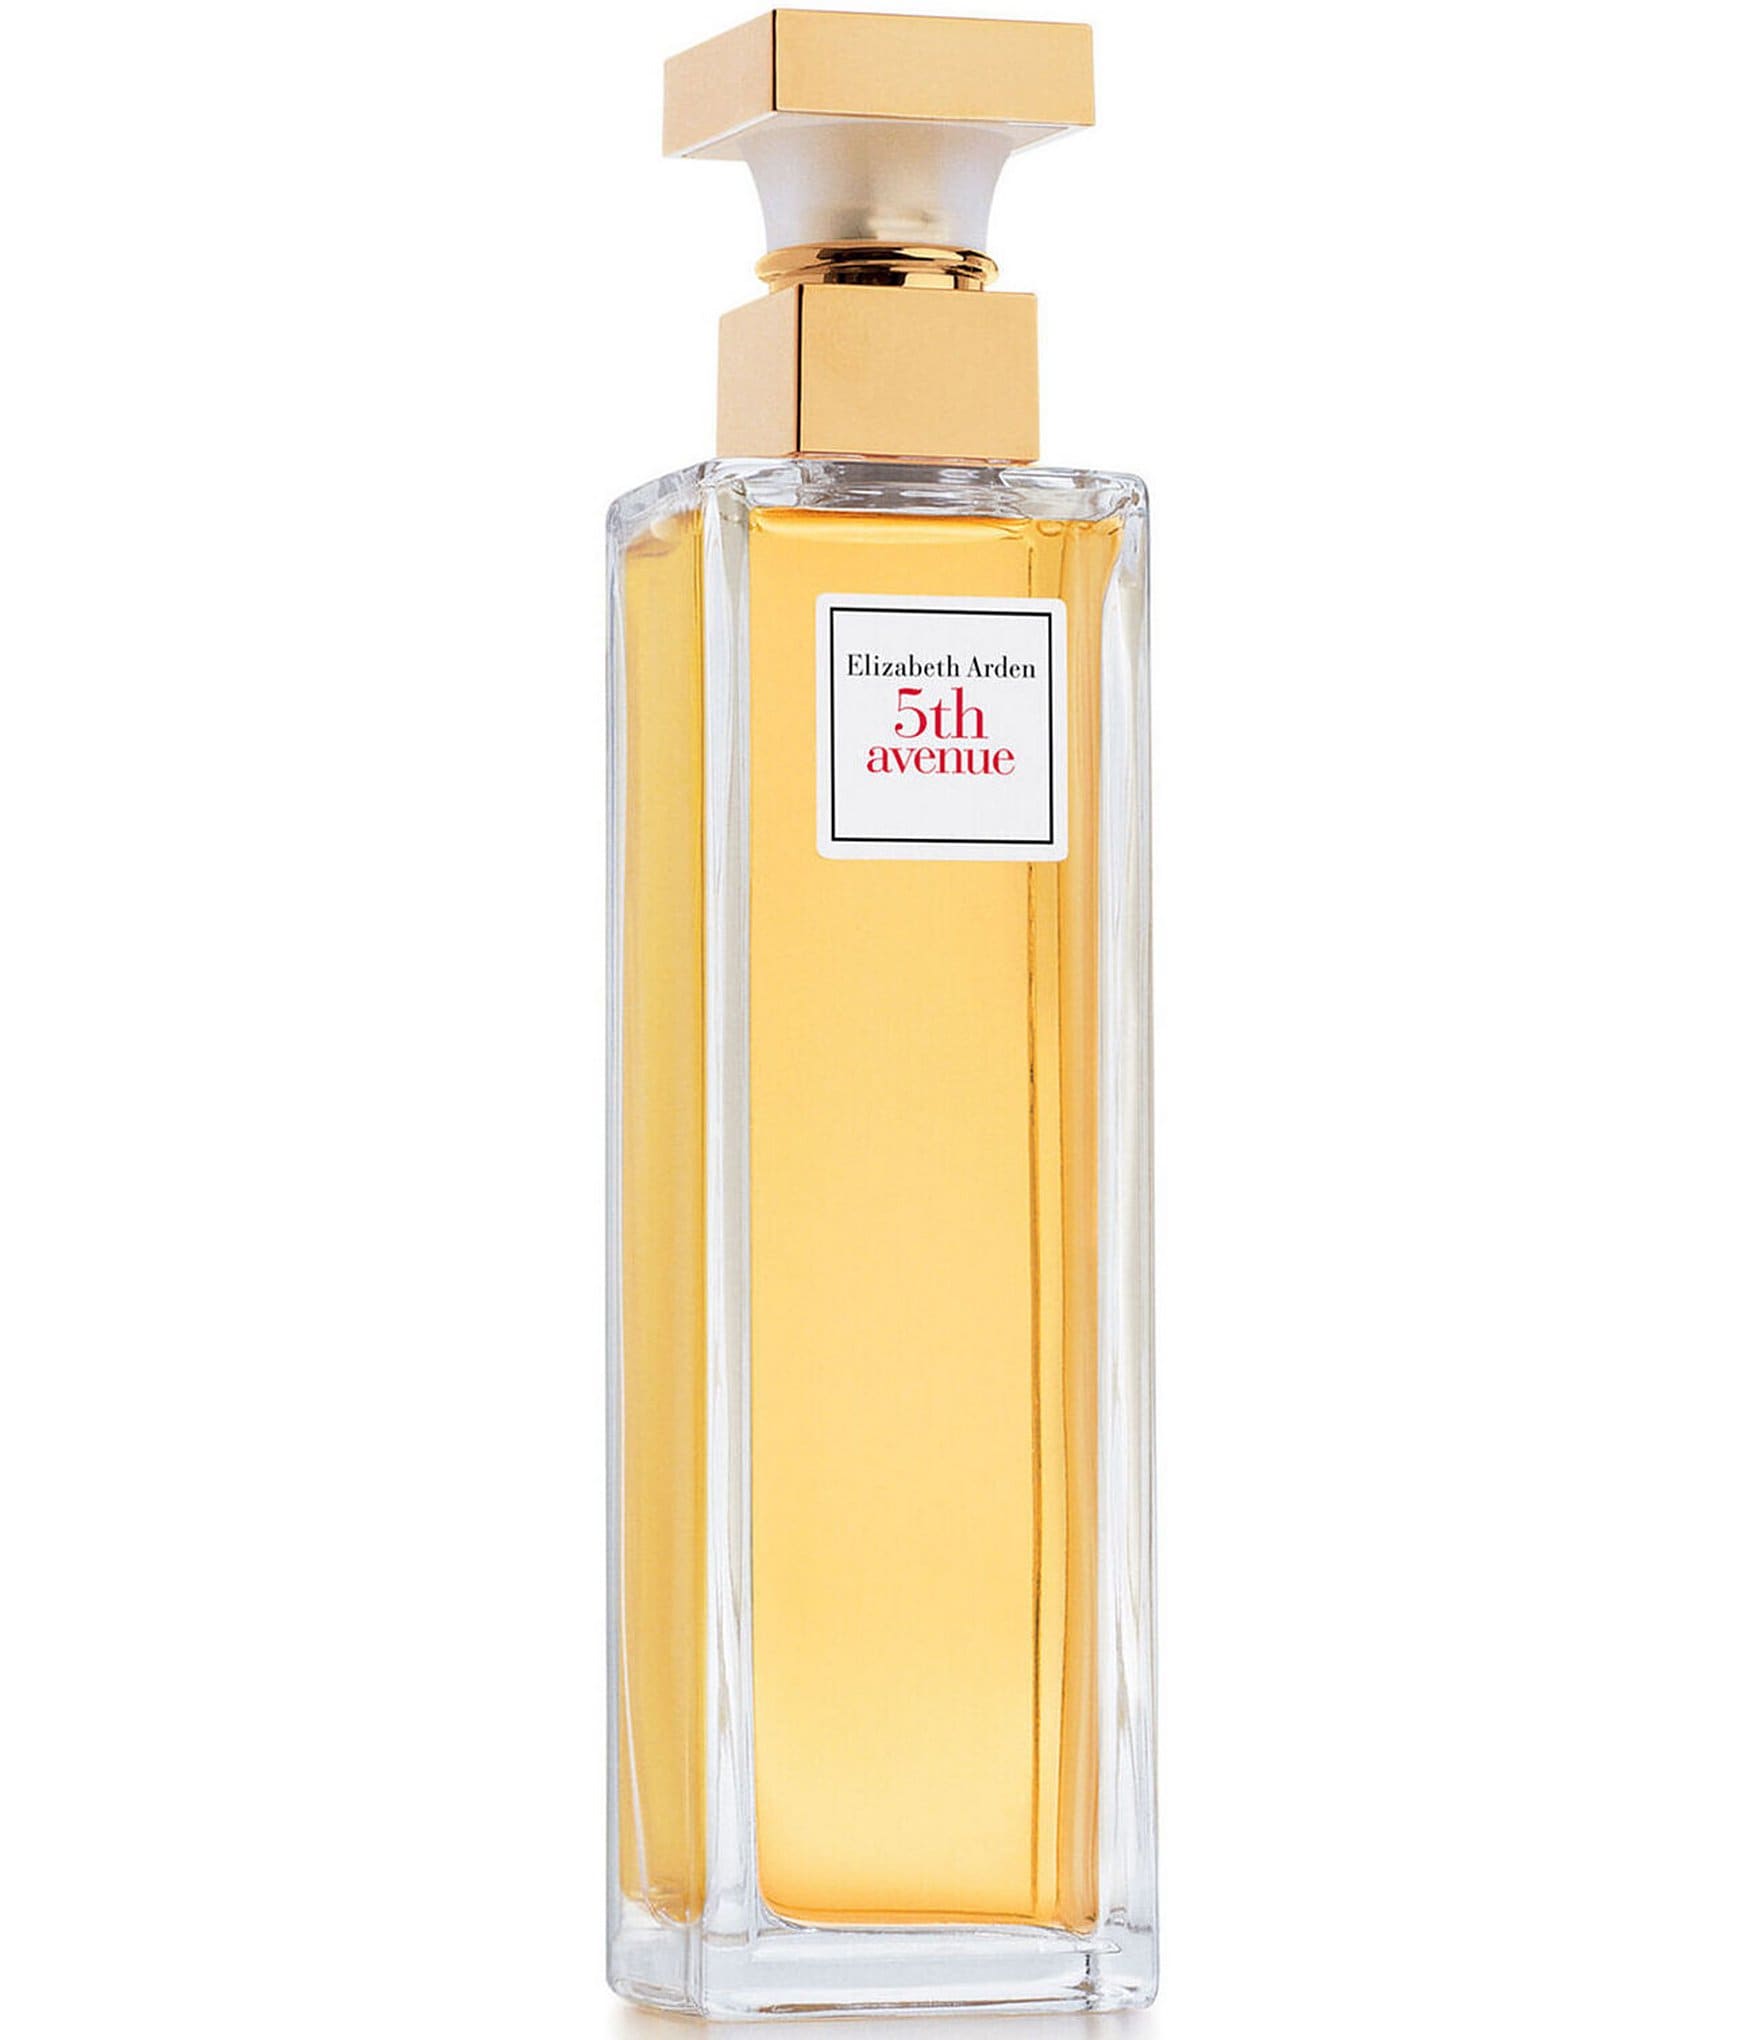 Elizabeth Arden 5th Eau Parfum | Dillard's